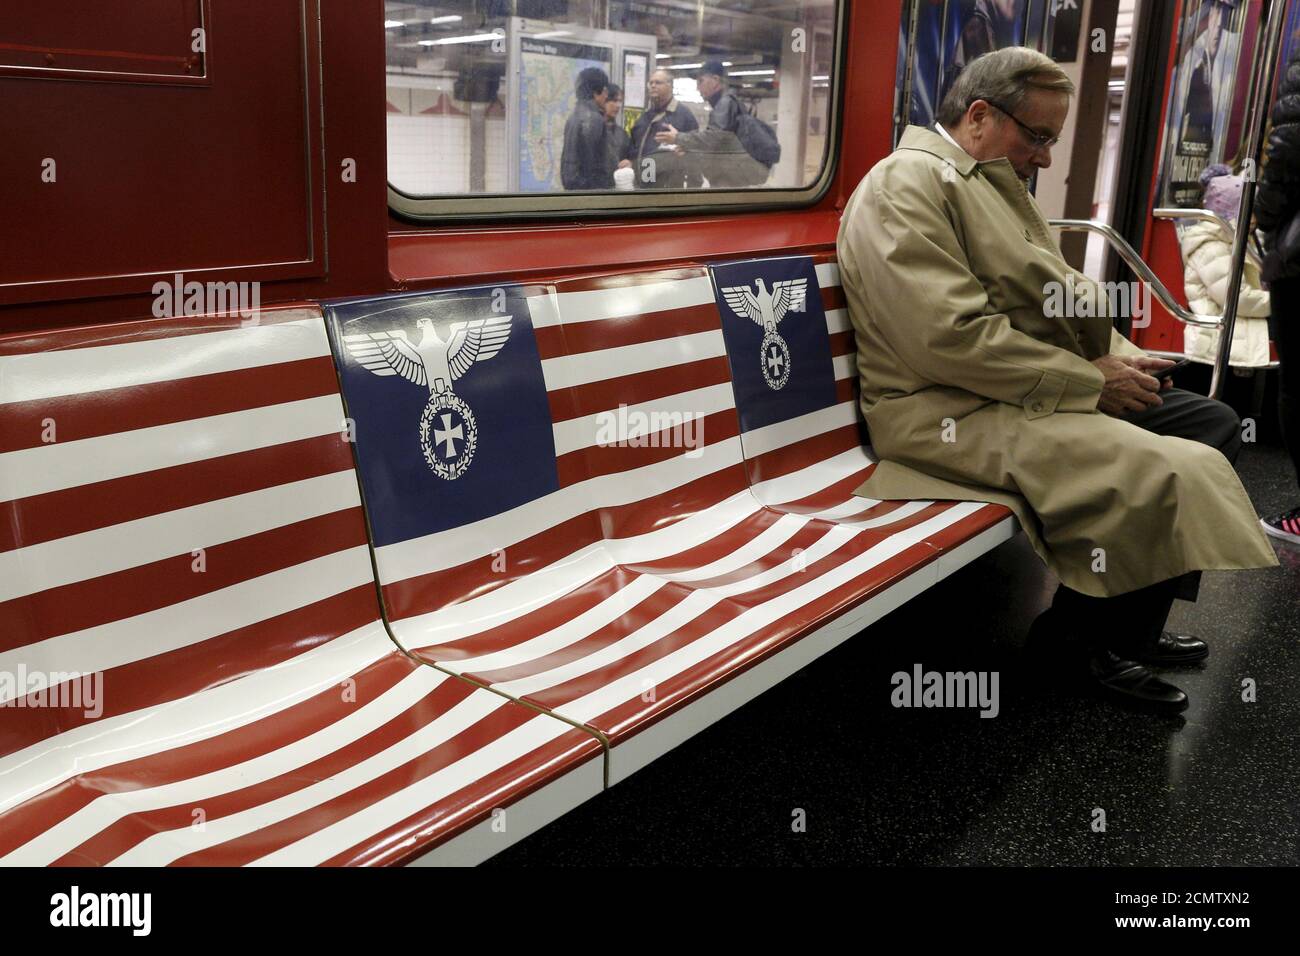 Passagiere fahren einen 42nd Street Shuttle U-Bahn-Zug, verpackt mit  Werbung für die Amazon-Serie 